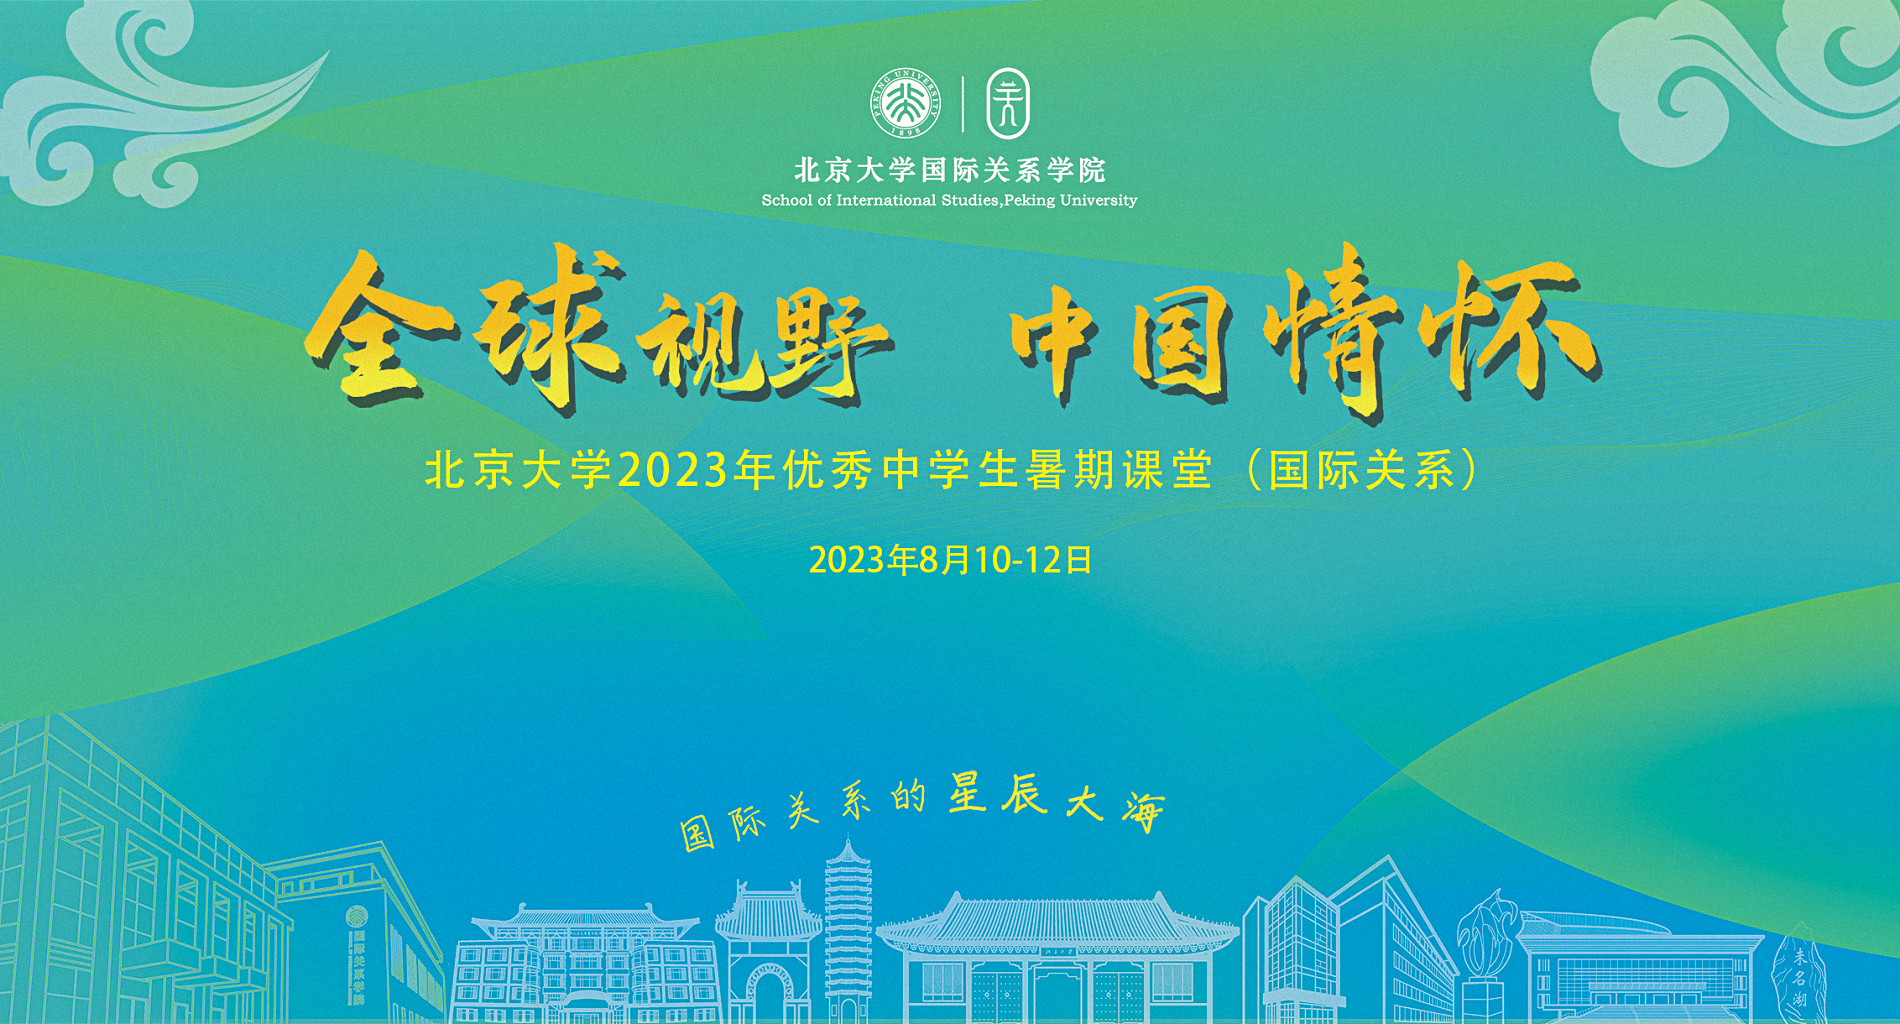 太阳网站集团(中国)有限公司2023年中员工暑期课堂顺利开班